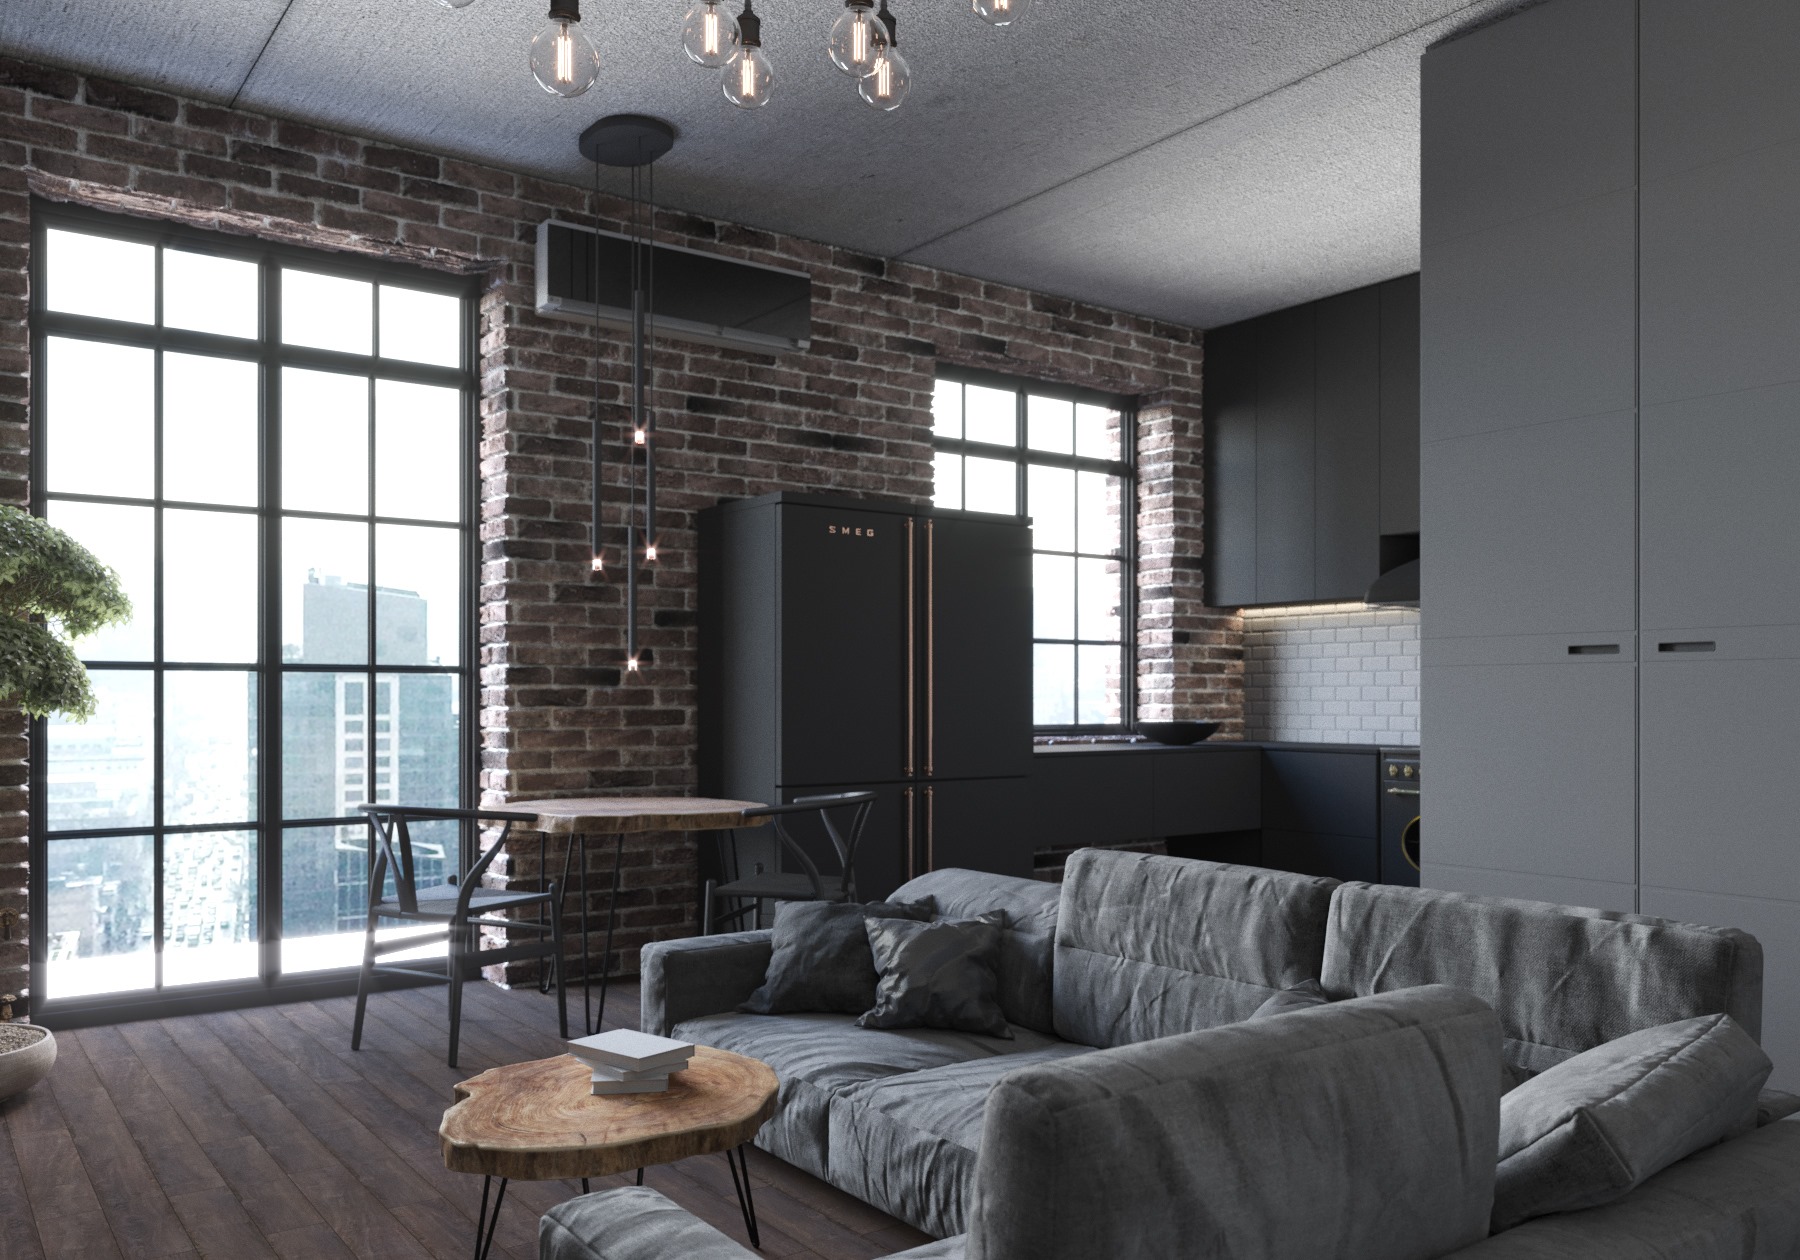 Industrial style apartment interior design